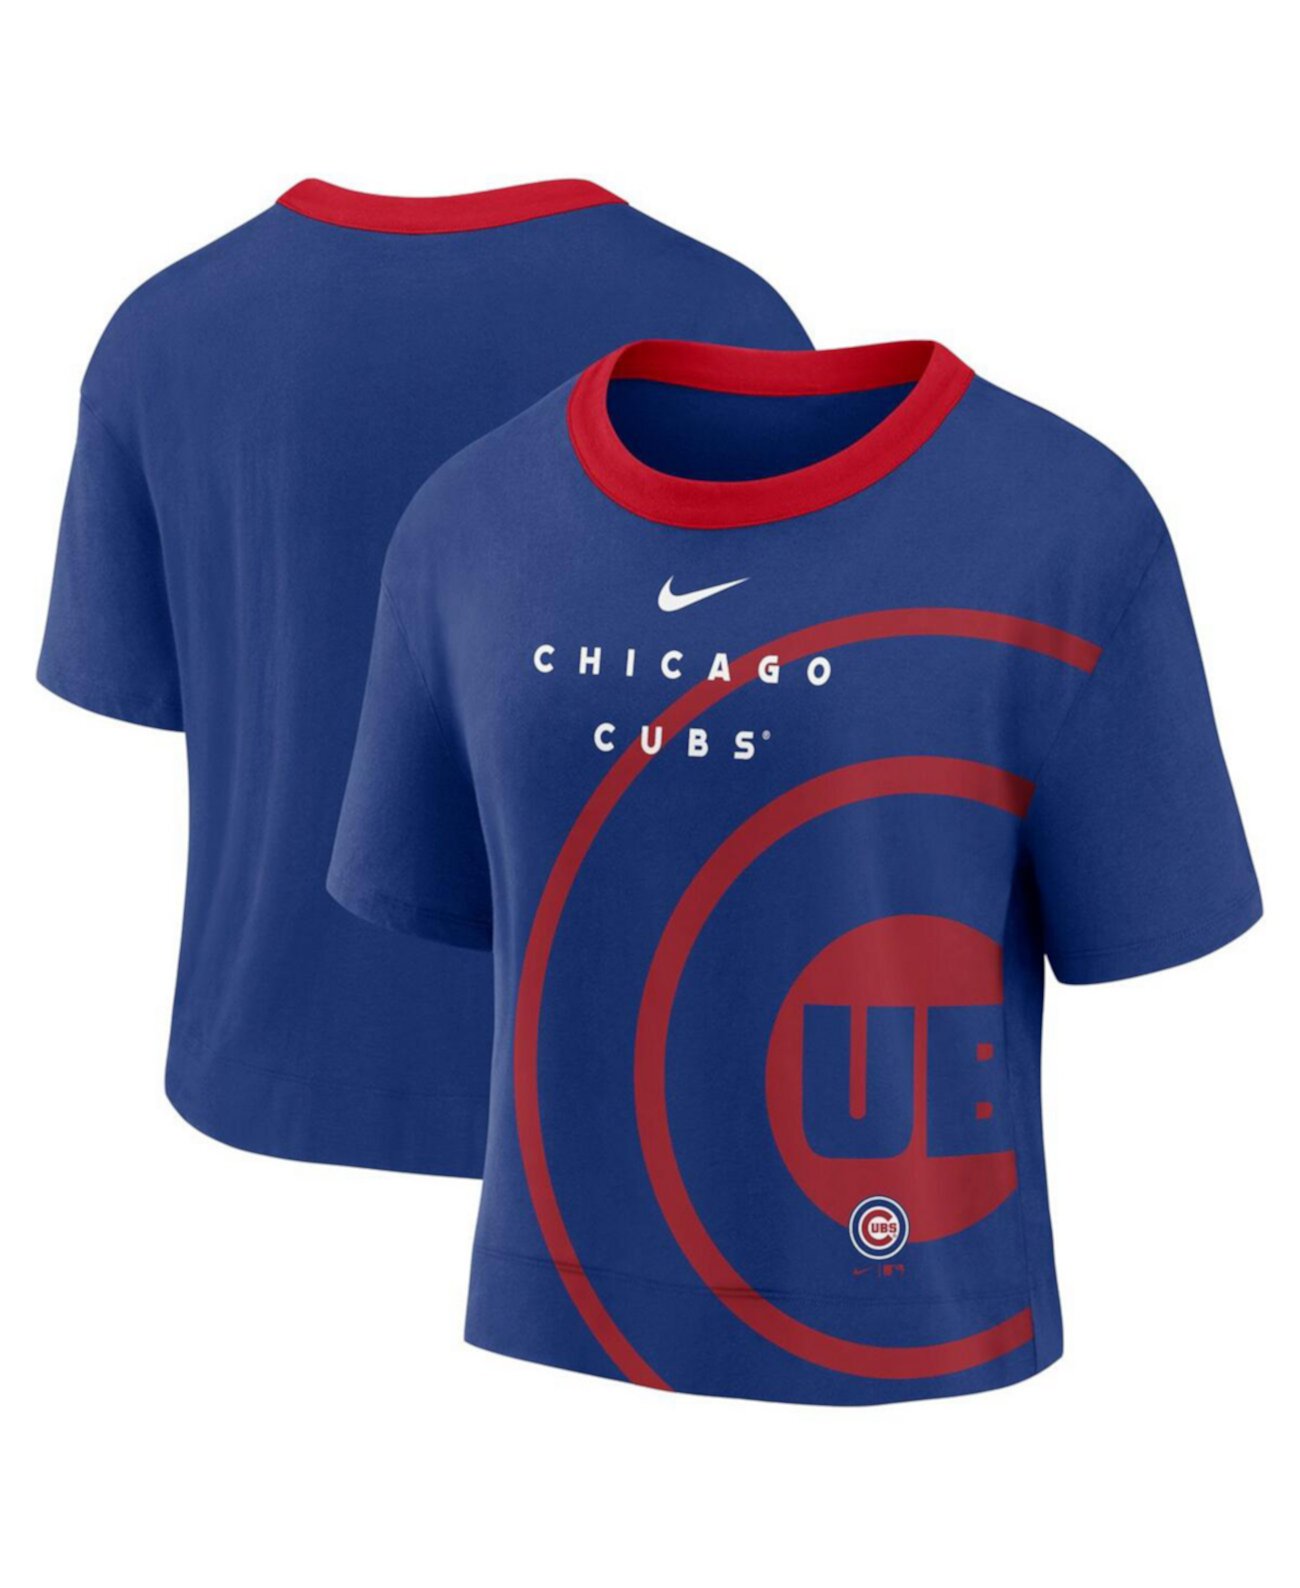 Женская футболка Chicago Cubs от Nike Nike